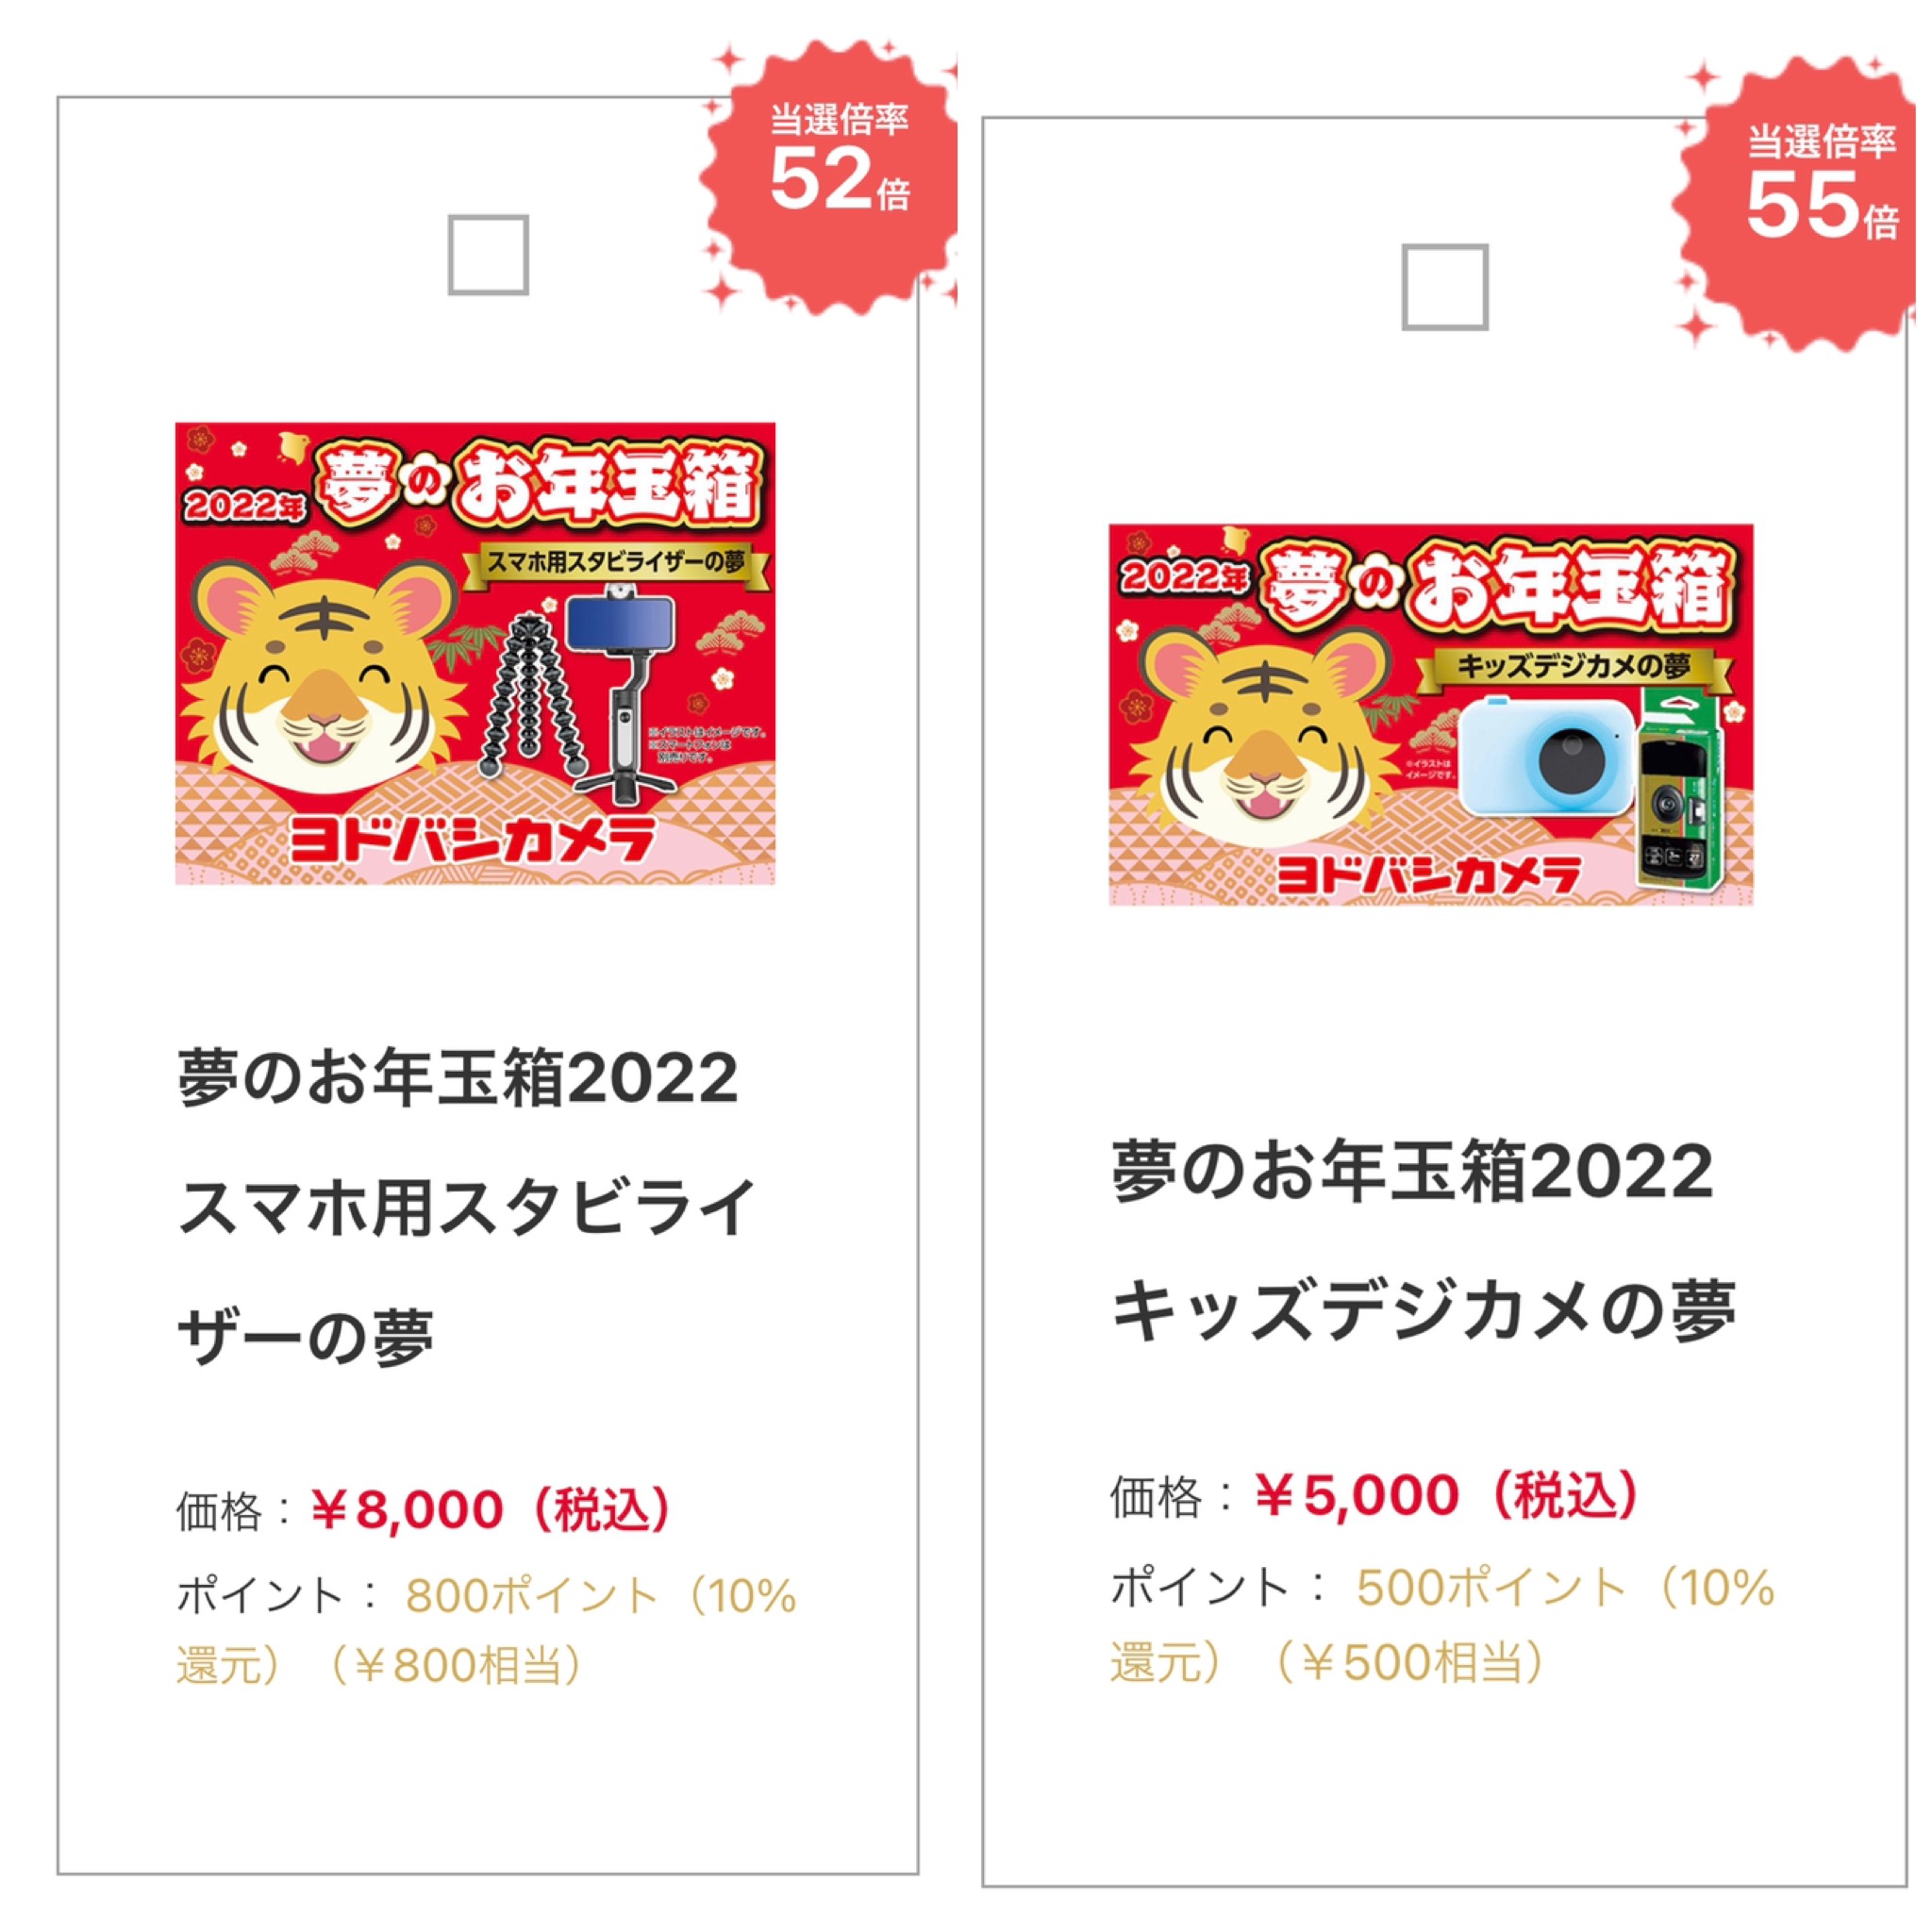 ヨドバシ福袋2022❘歴代中身ネタバレ公開!!販売価格や倍率も | shuhumika